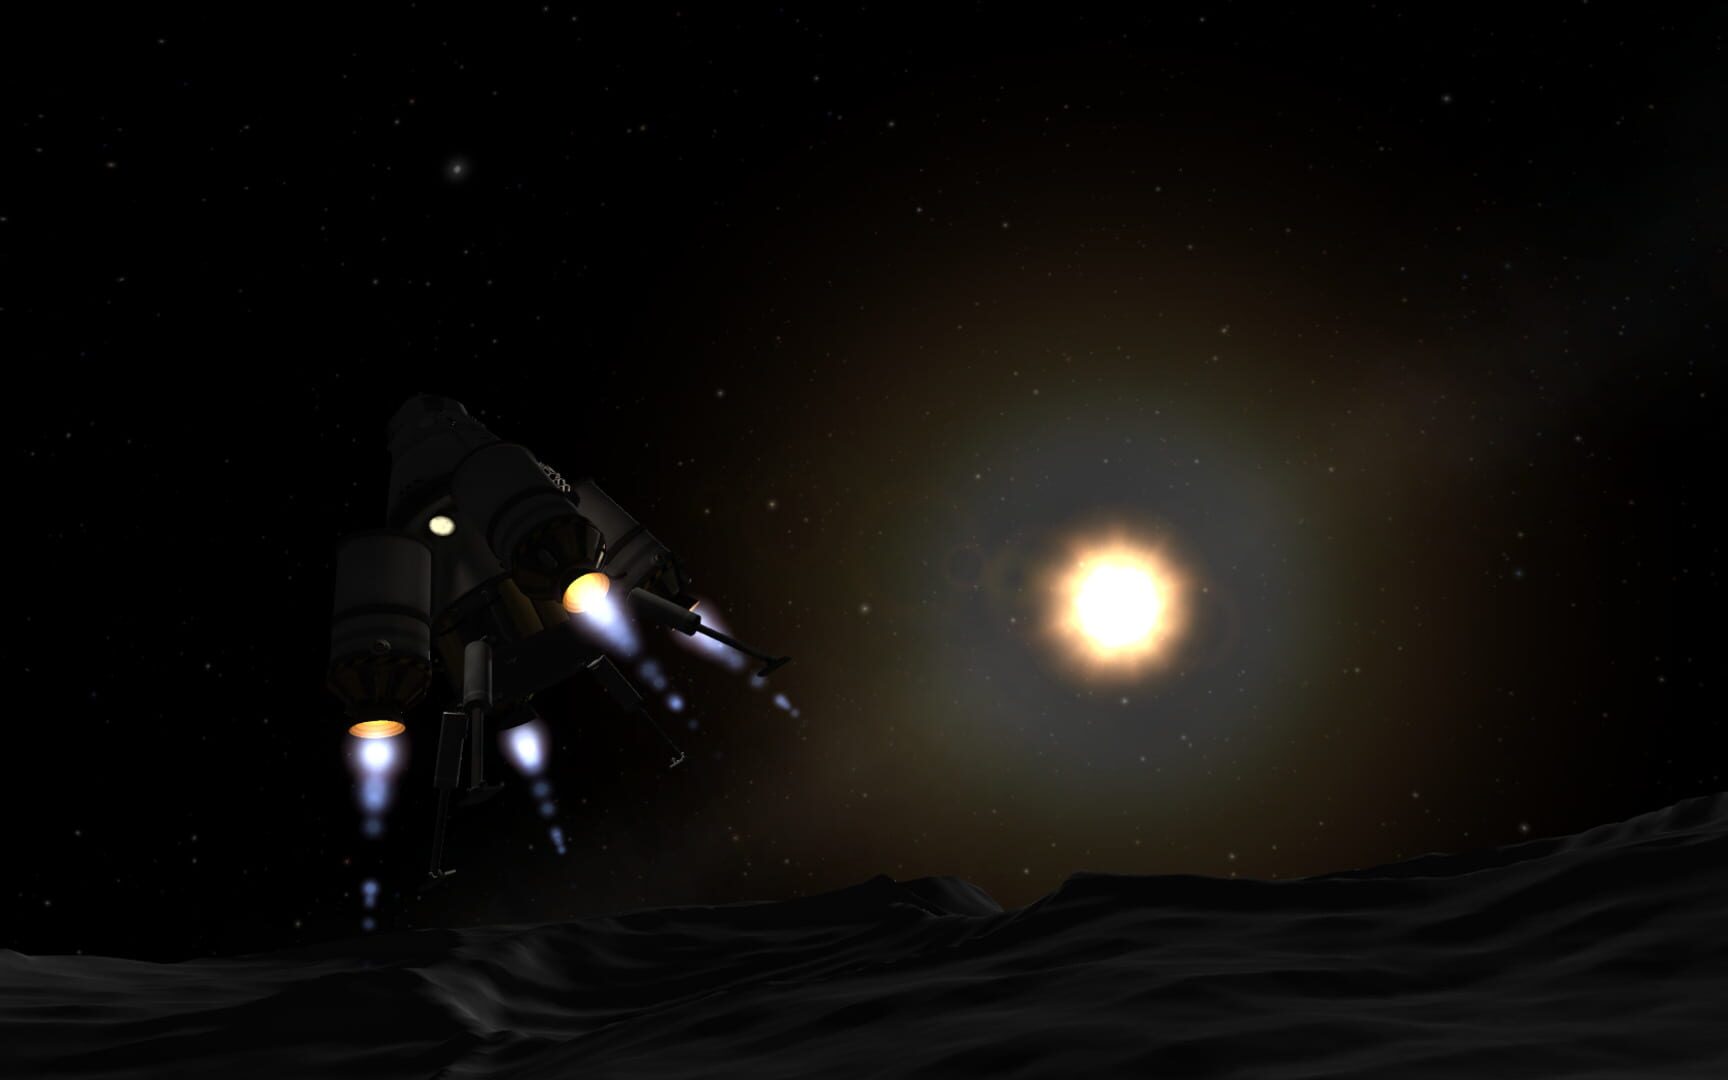 Screenshot for Kerbal Space Program